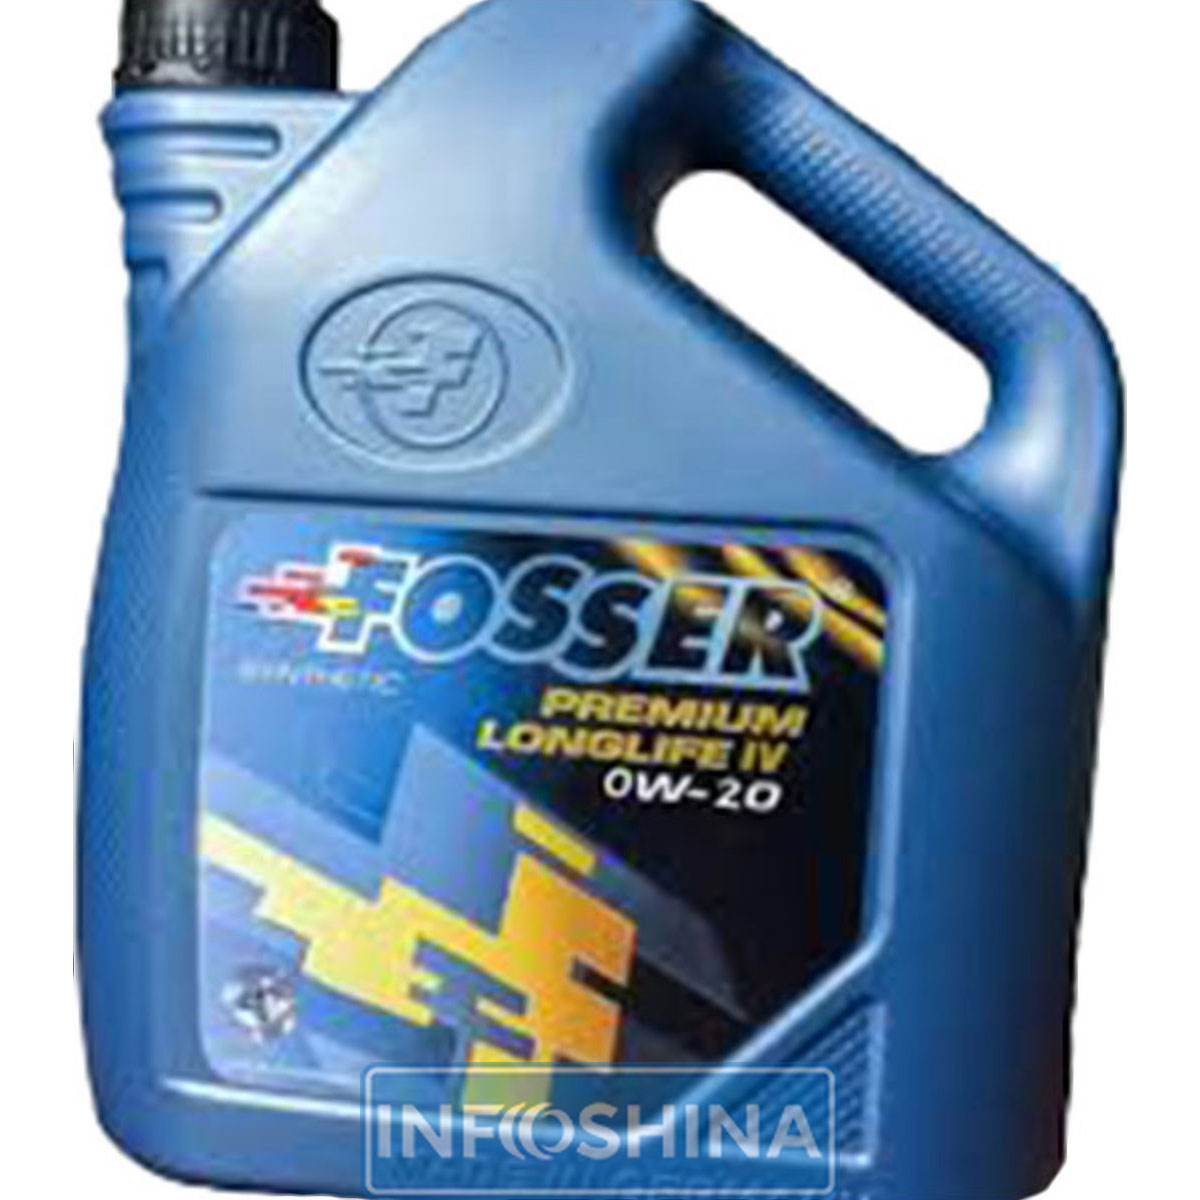 Fosser Premium Longlife IV 0W-20